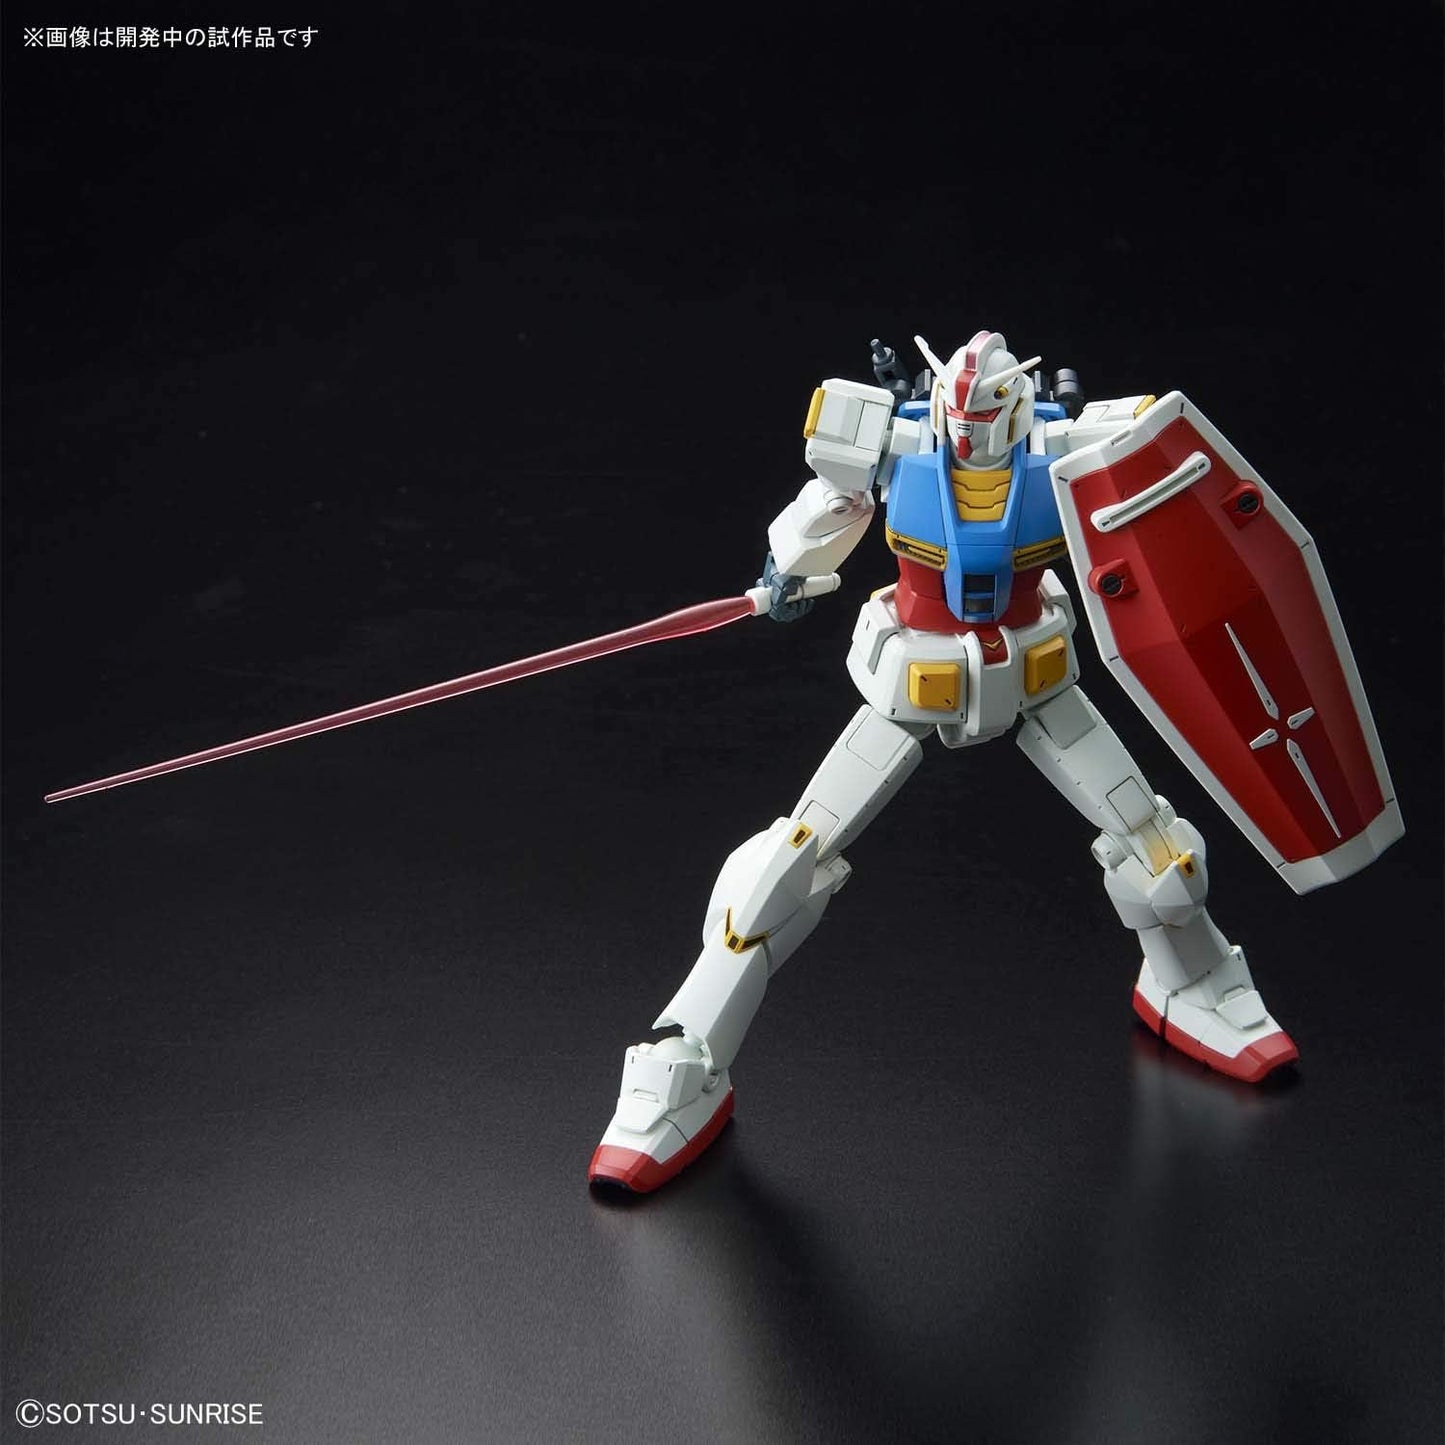 1/144 HG "Gundam" Gundam G40 (Industrial Design Ver.) | animota